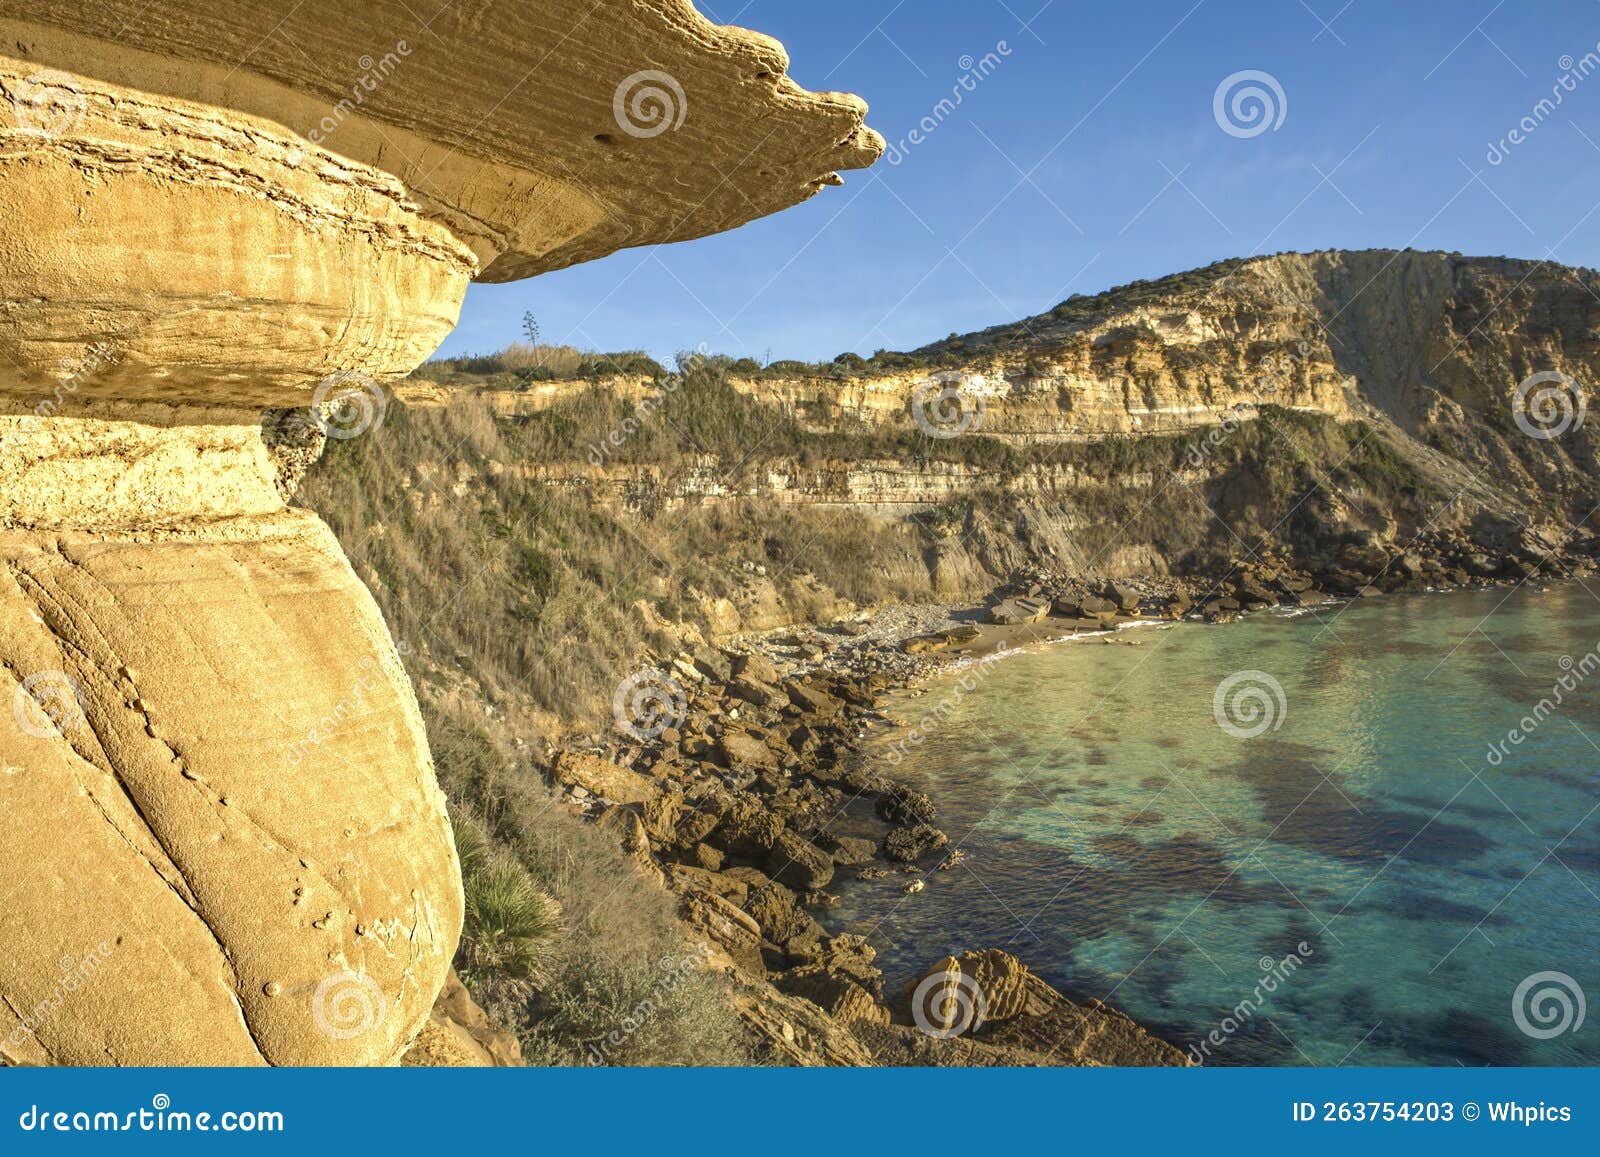 cama de vaca cliffs, faro district, portugal